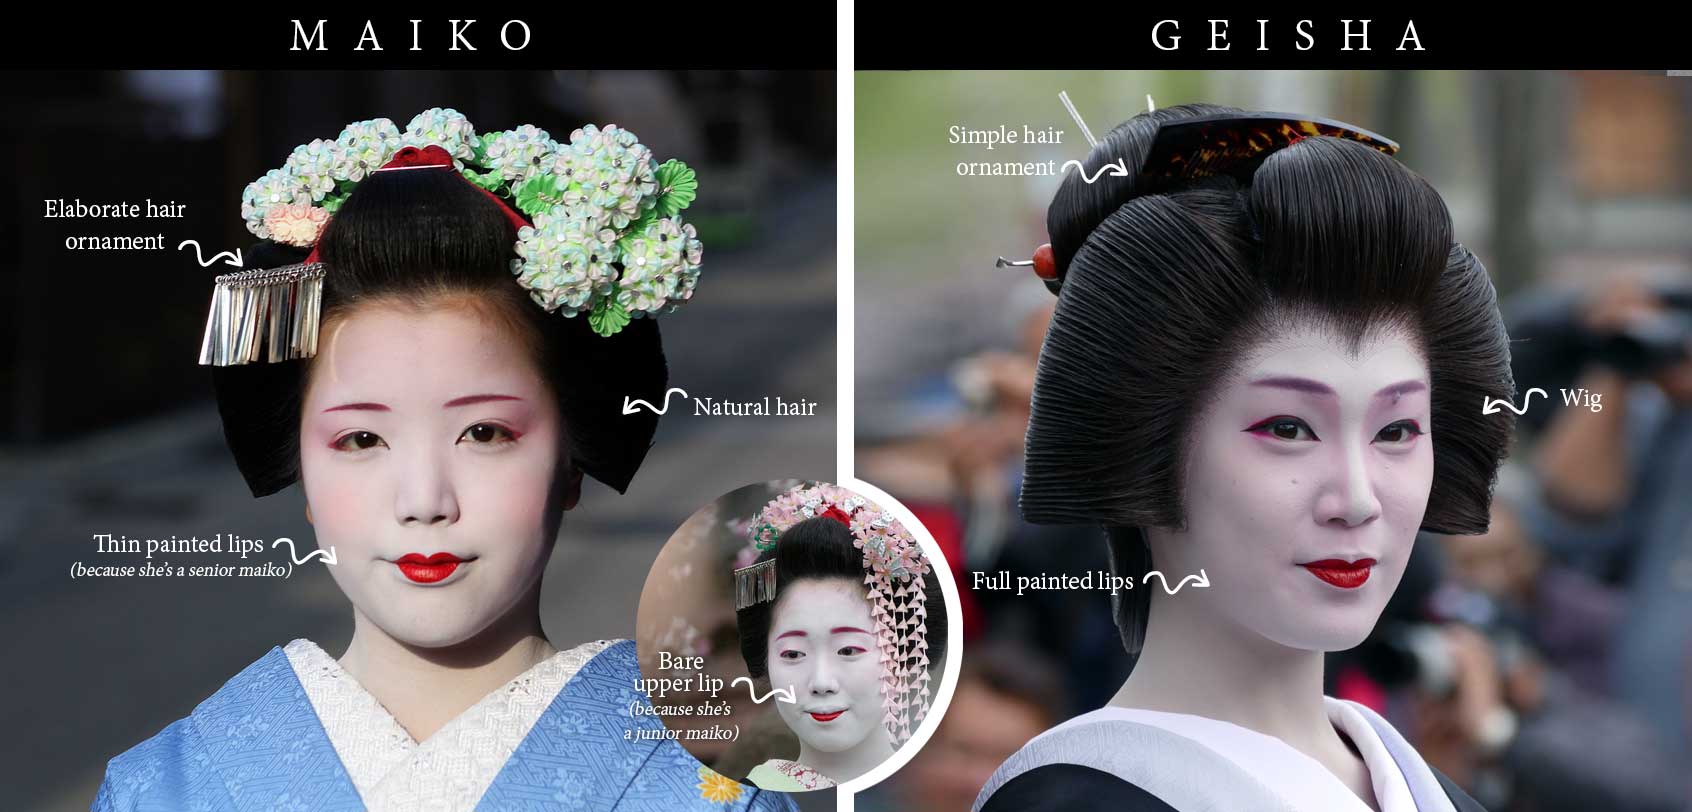 Giesha and Maiko Makeup Differences